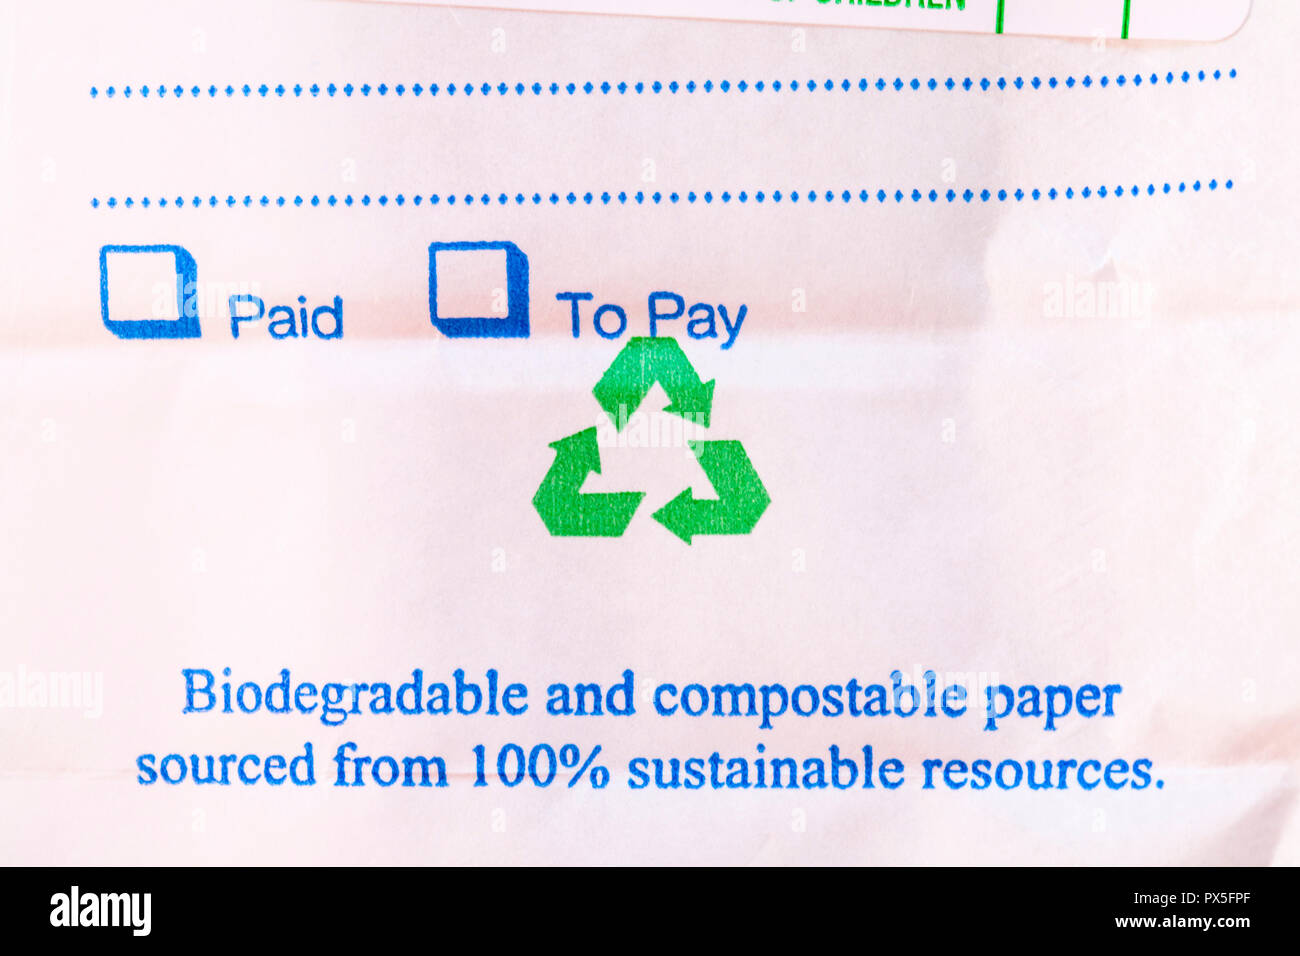 Información sobre prescripción farmacia bolsa con casillas para pagado o por pagar, biodegradable y compostable papel 100% procedentes de recursos sostenibles Foto de stock